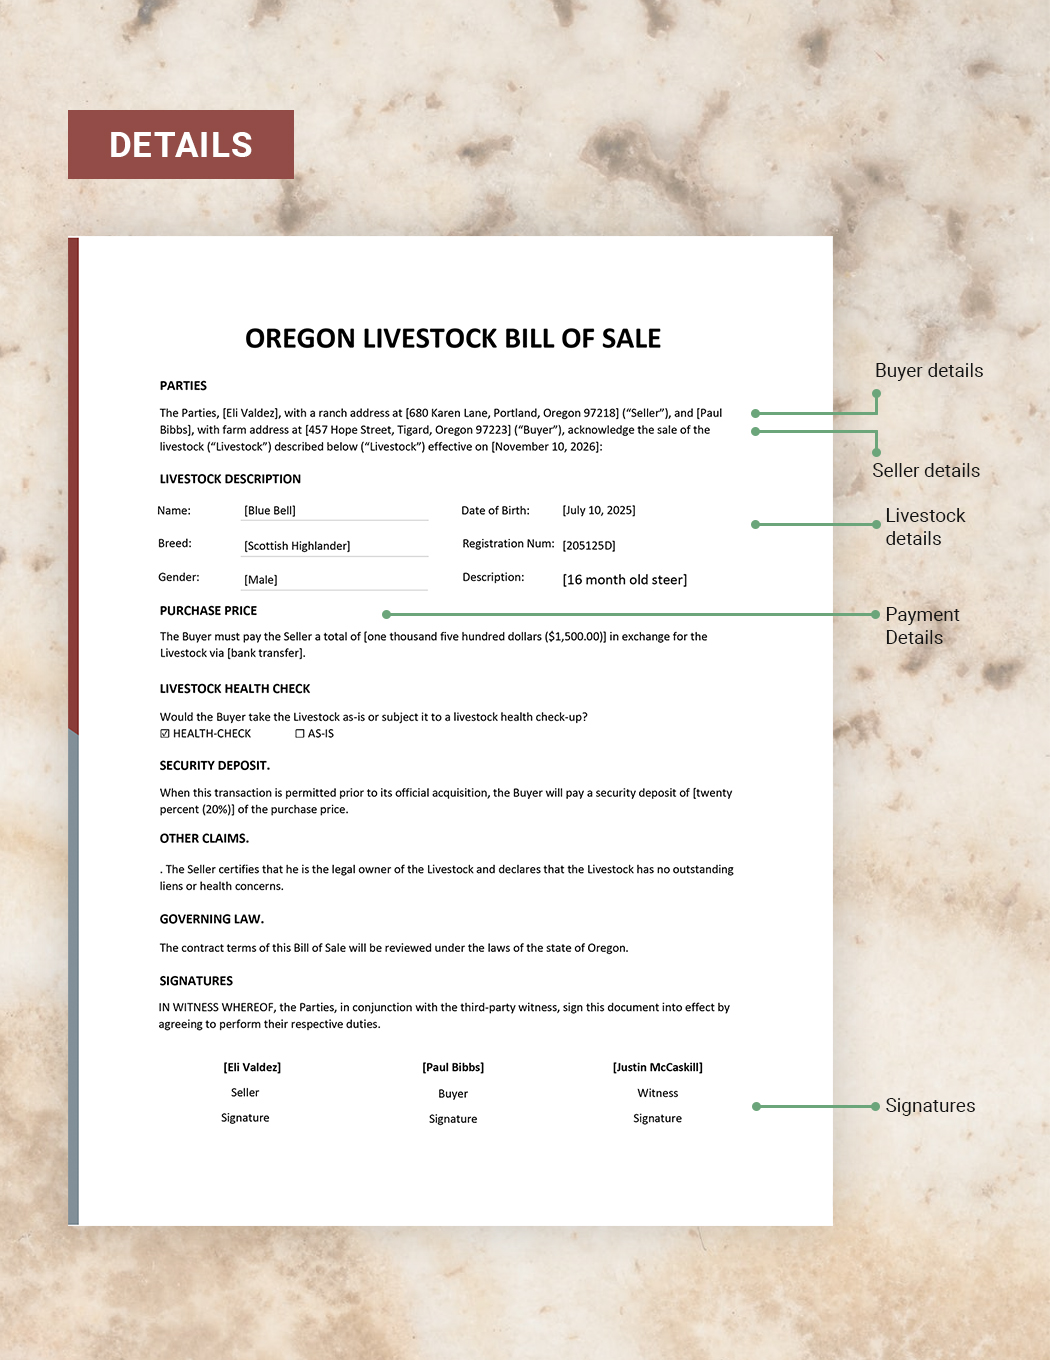 Oregon Livestock Bill of Sale Template